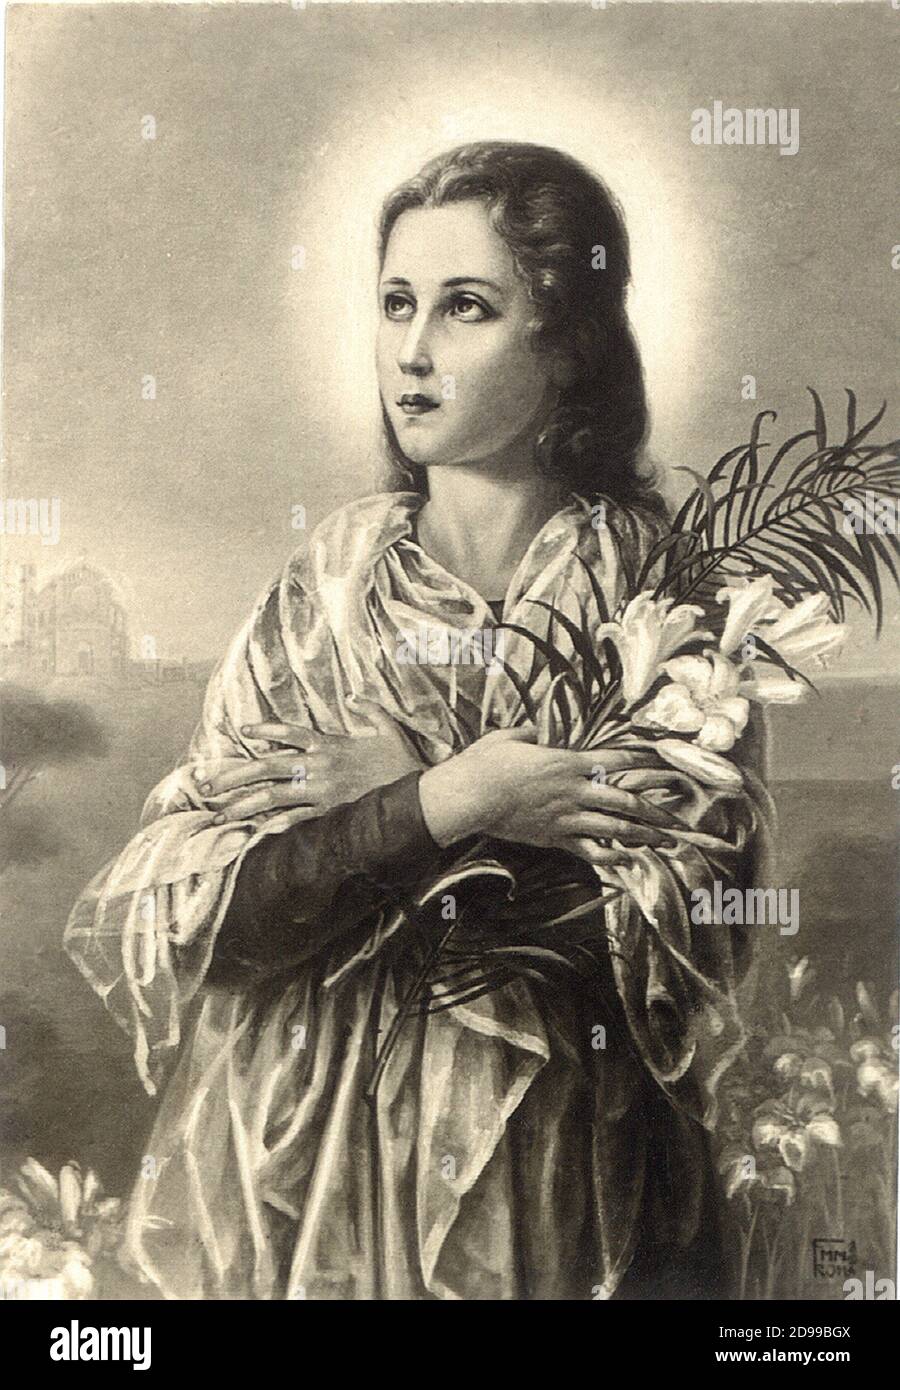 Saint  MARIA  GORETTI  ( Corinaldo  ,  Ancona  1890  -  Nettuno  Roma 1902  ) canonized in  1950  (  in this image a popular holy picture  Italy  around 1940 's )  - Santa -  CATHOLIC RELIGION - RELIGIONE CATTOLICA -- aureola - giglio - gigli - vergine - virgin - Santo ---- Archivio GBB Stock Photo